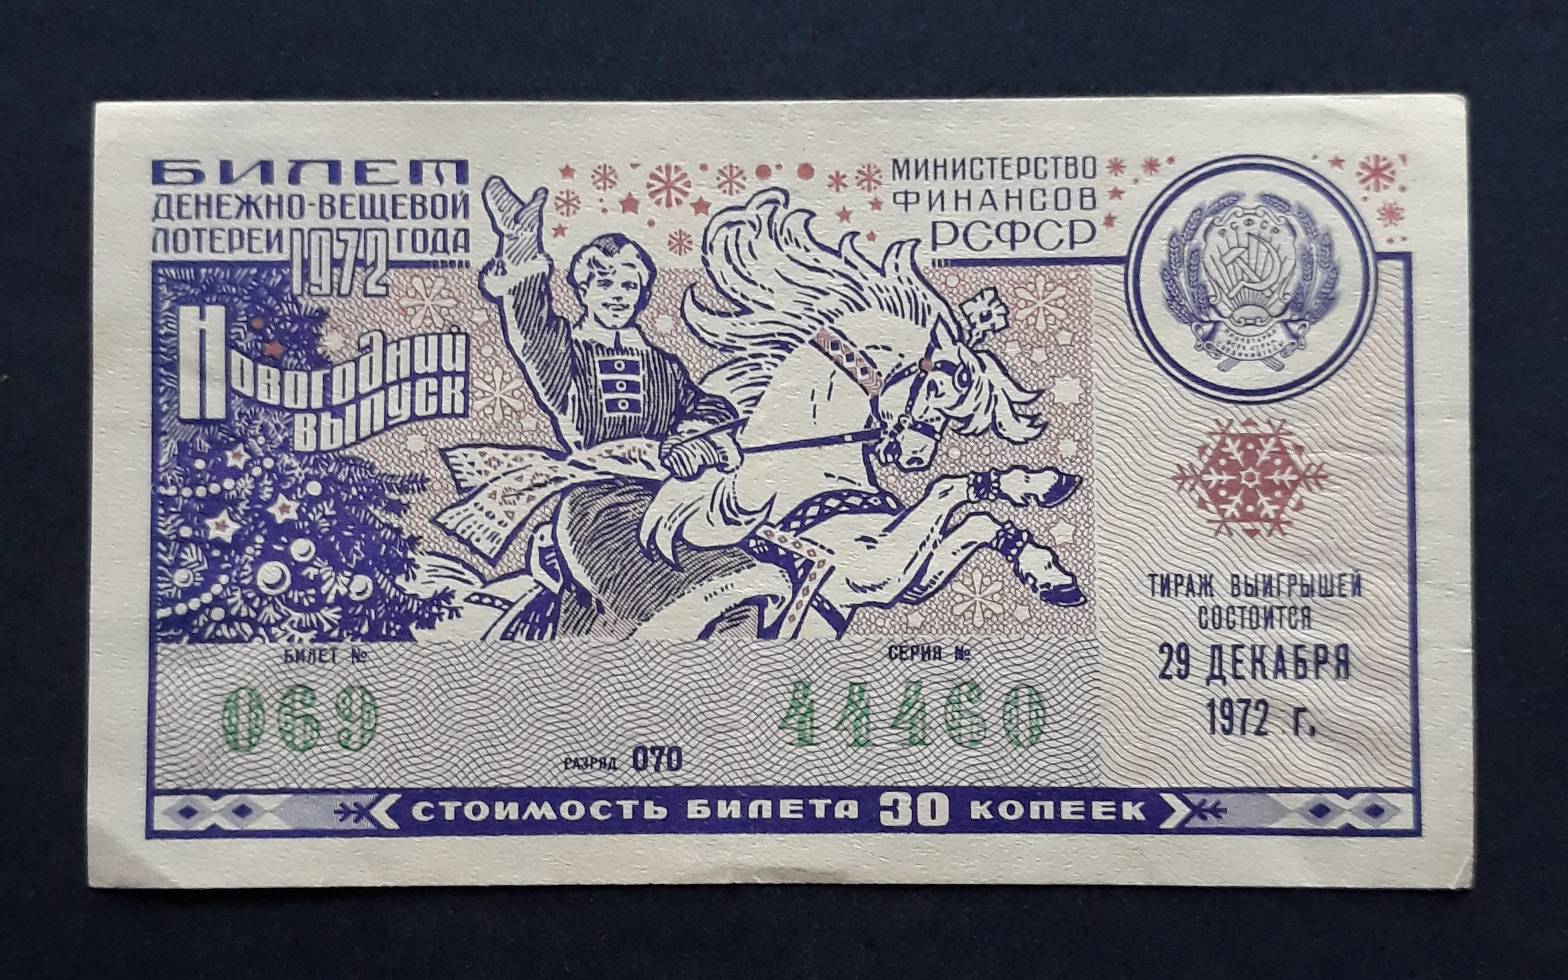 8 декабря 1972. Лотерейный билет. Денежно-вещевая лотерея. Новогодний лотерейный билет СССР. Лотерейный билет 1972 года.